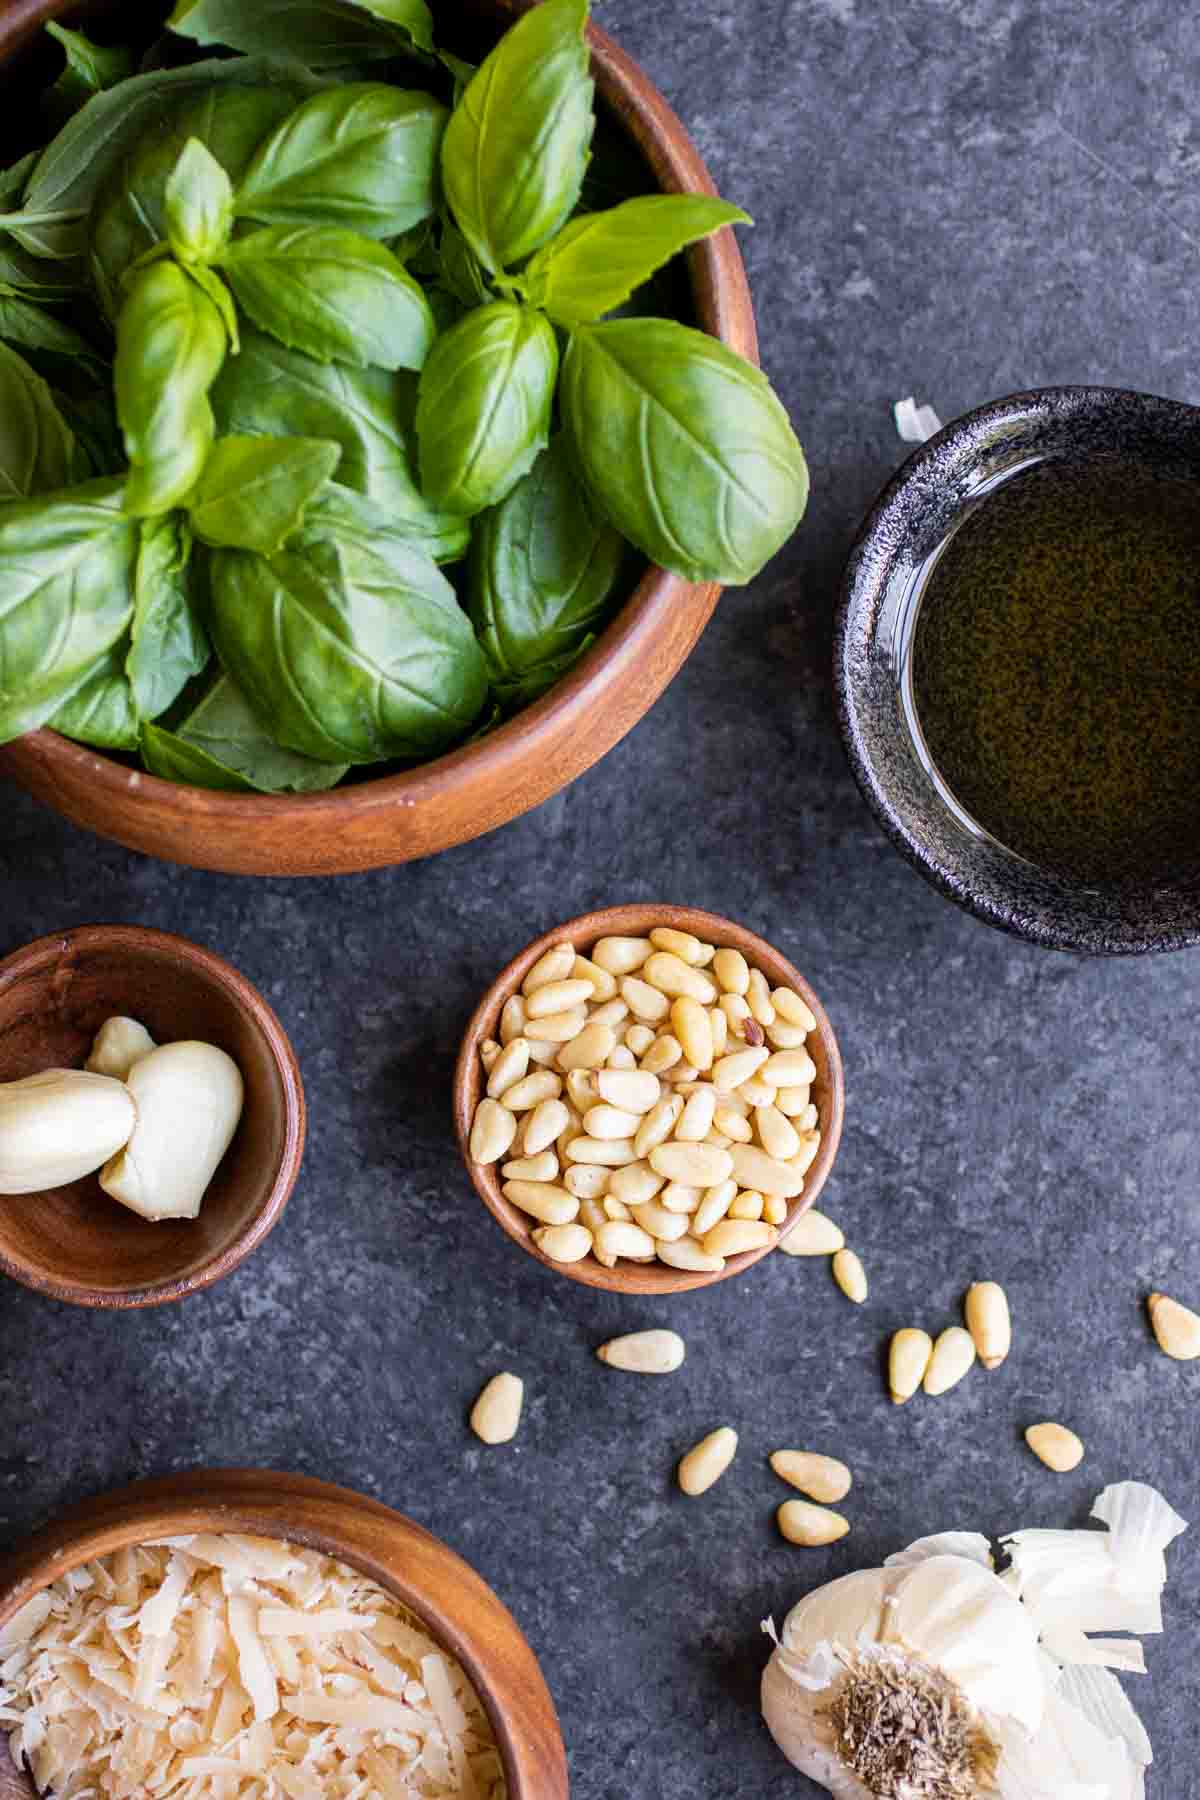 How to make basil pesto ingredients